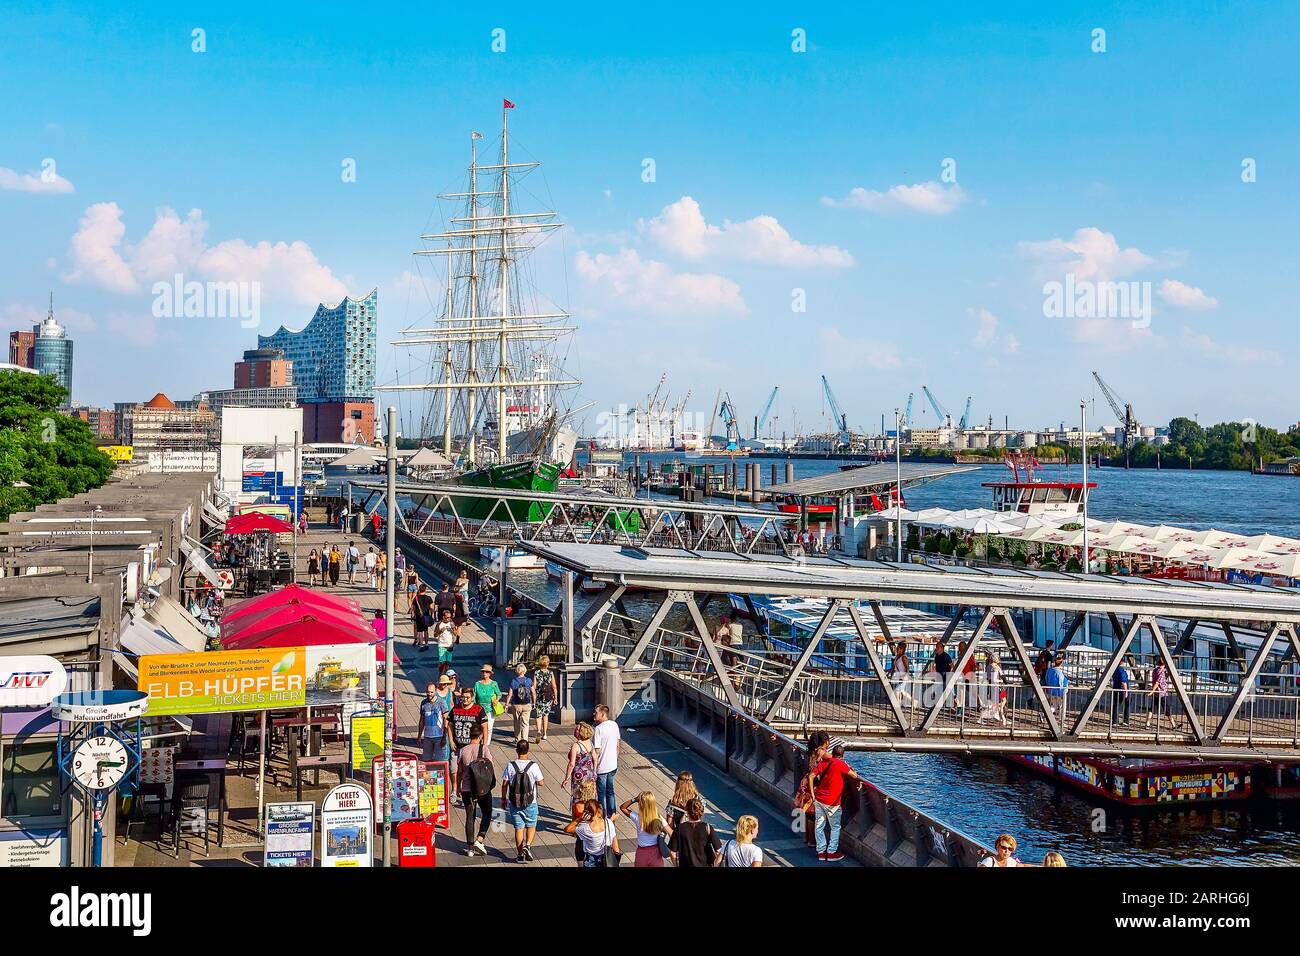 Hamburg, Deutschland - 26. Juli 2018: altes Schiff mit Restaurant auf Elbe, Hamburger Landungsbrücken Hafen Stockfoto